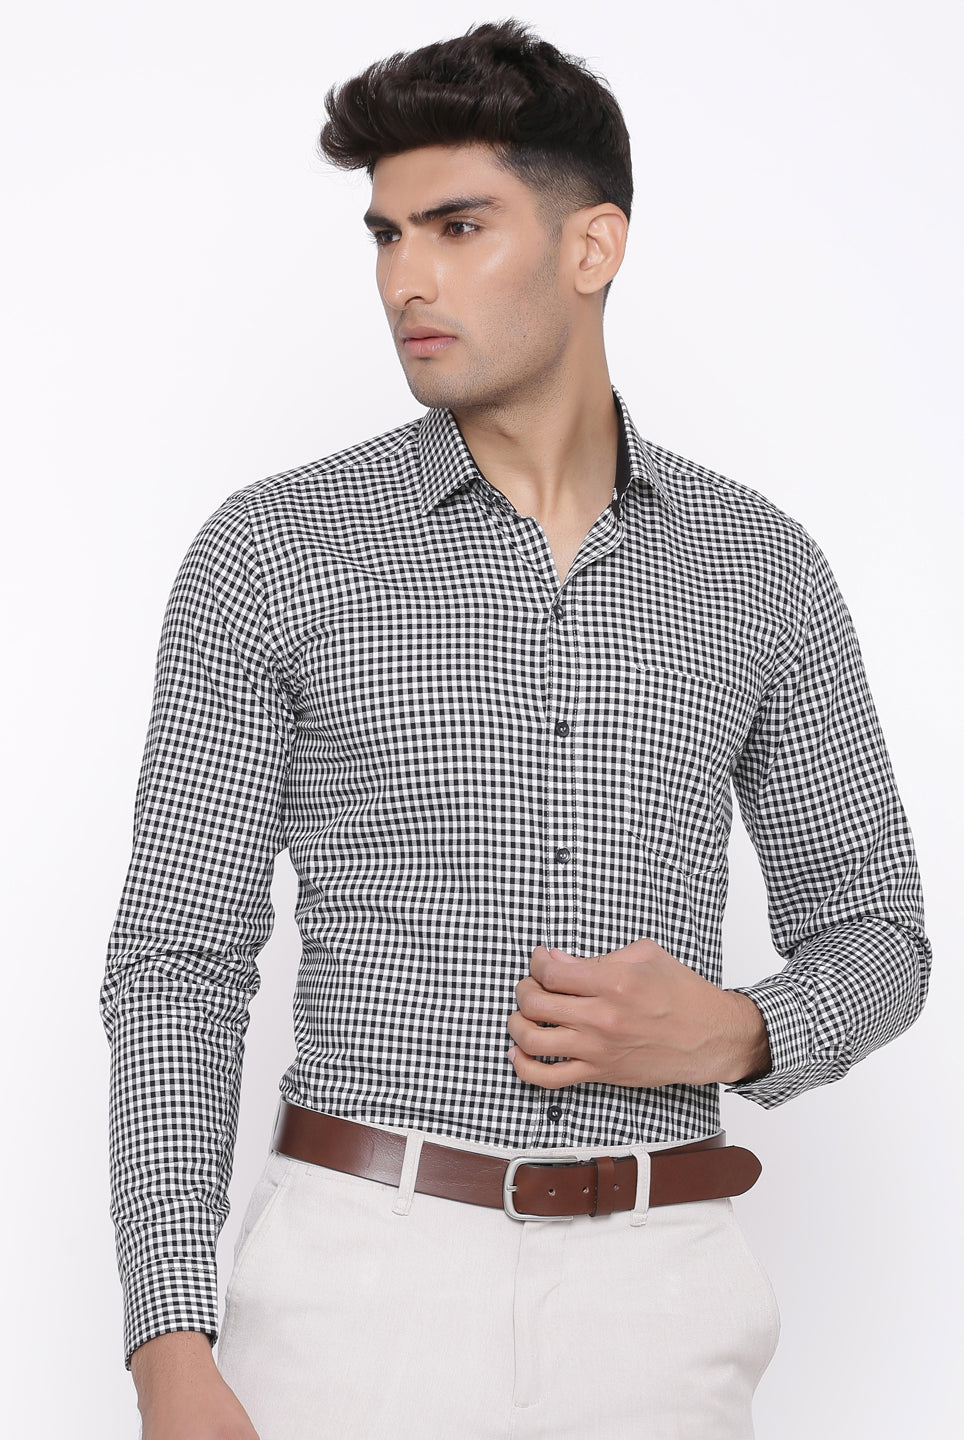 black and white checkered shirt